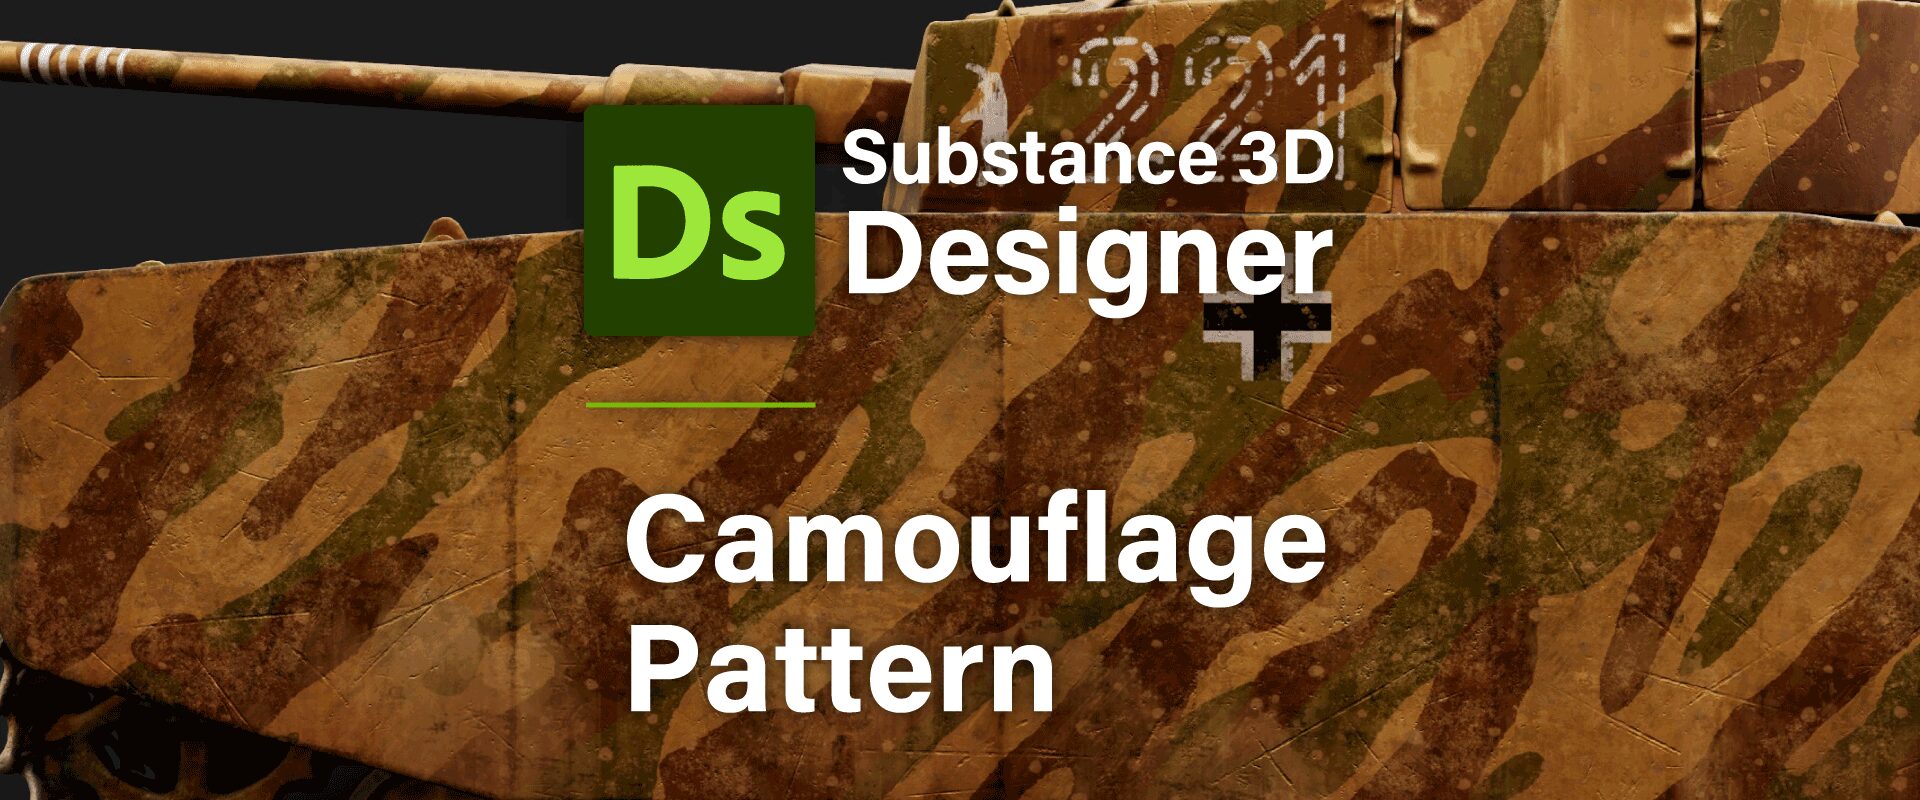 [ Substance 3D Designer 入門 ] Substance 3D Painter に出力するまでの基本的な手順について